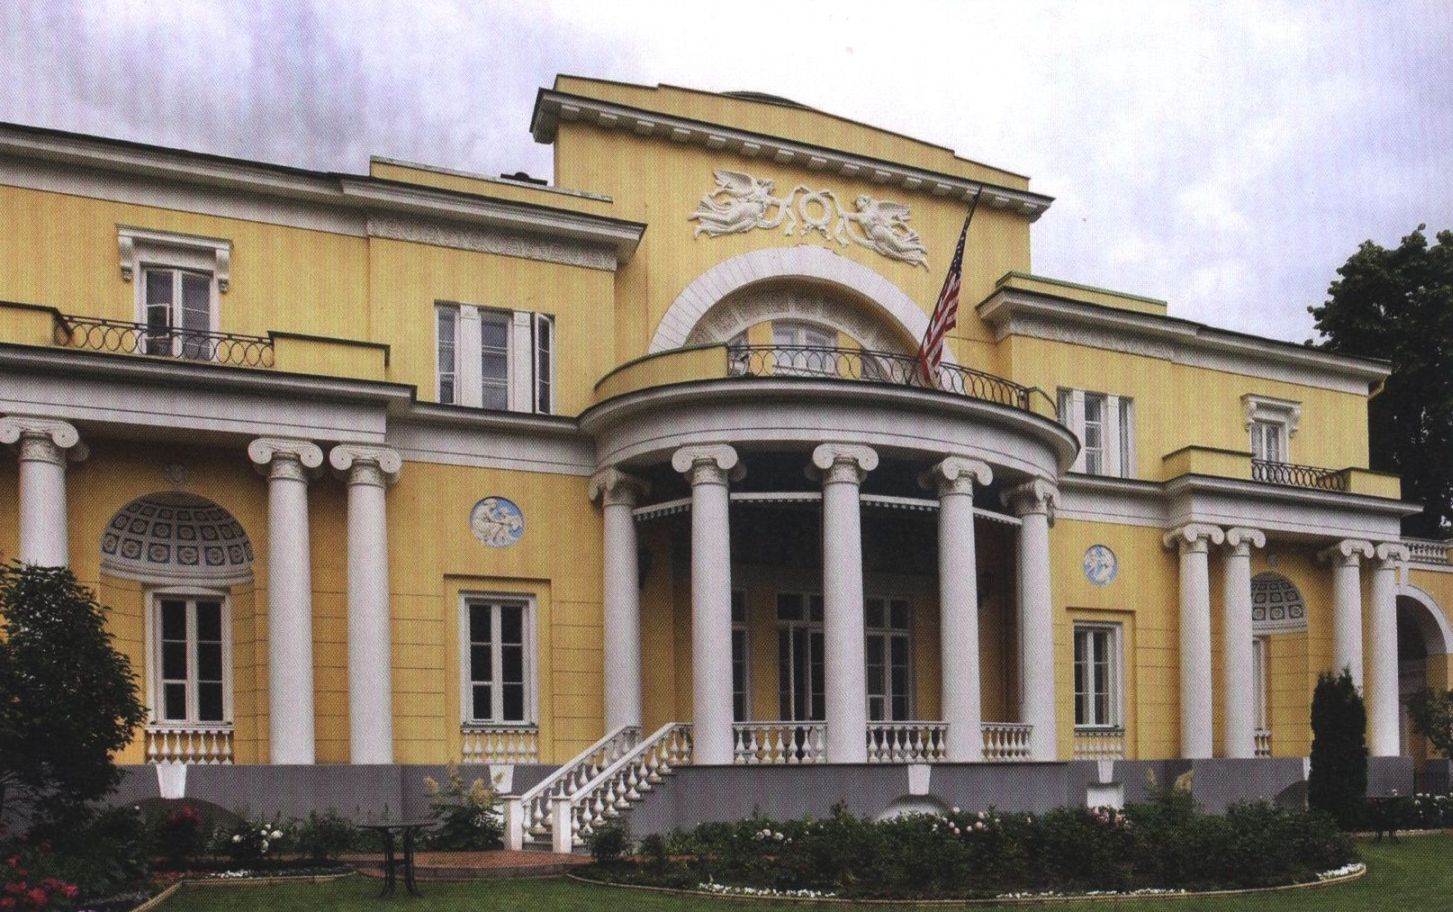 Спасопесковский переулок, дом 10. 2010-е гг. В 1918—1933 годах здесь размещались государственные учреждения и жилые квартиры, а с 1933 года особняк используется как резиденция американского посла в Москве (Спасо-хаус)